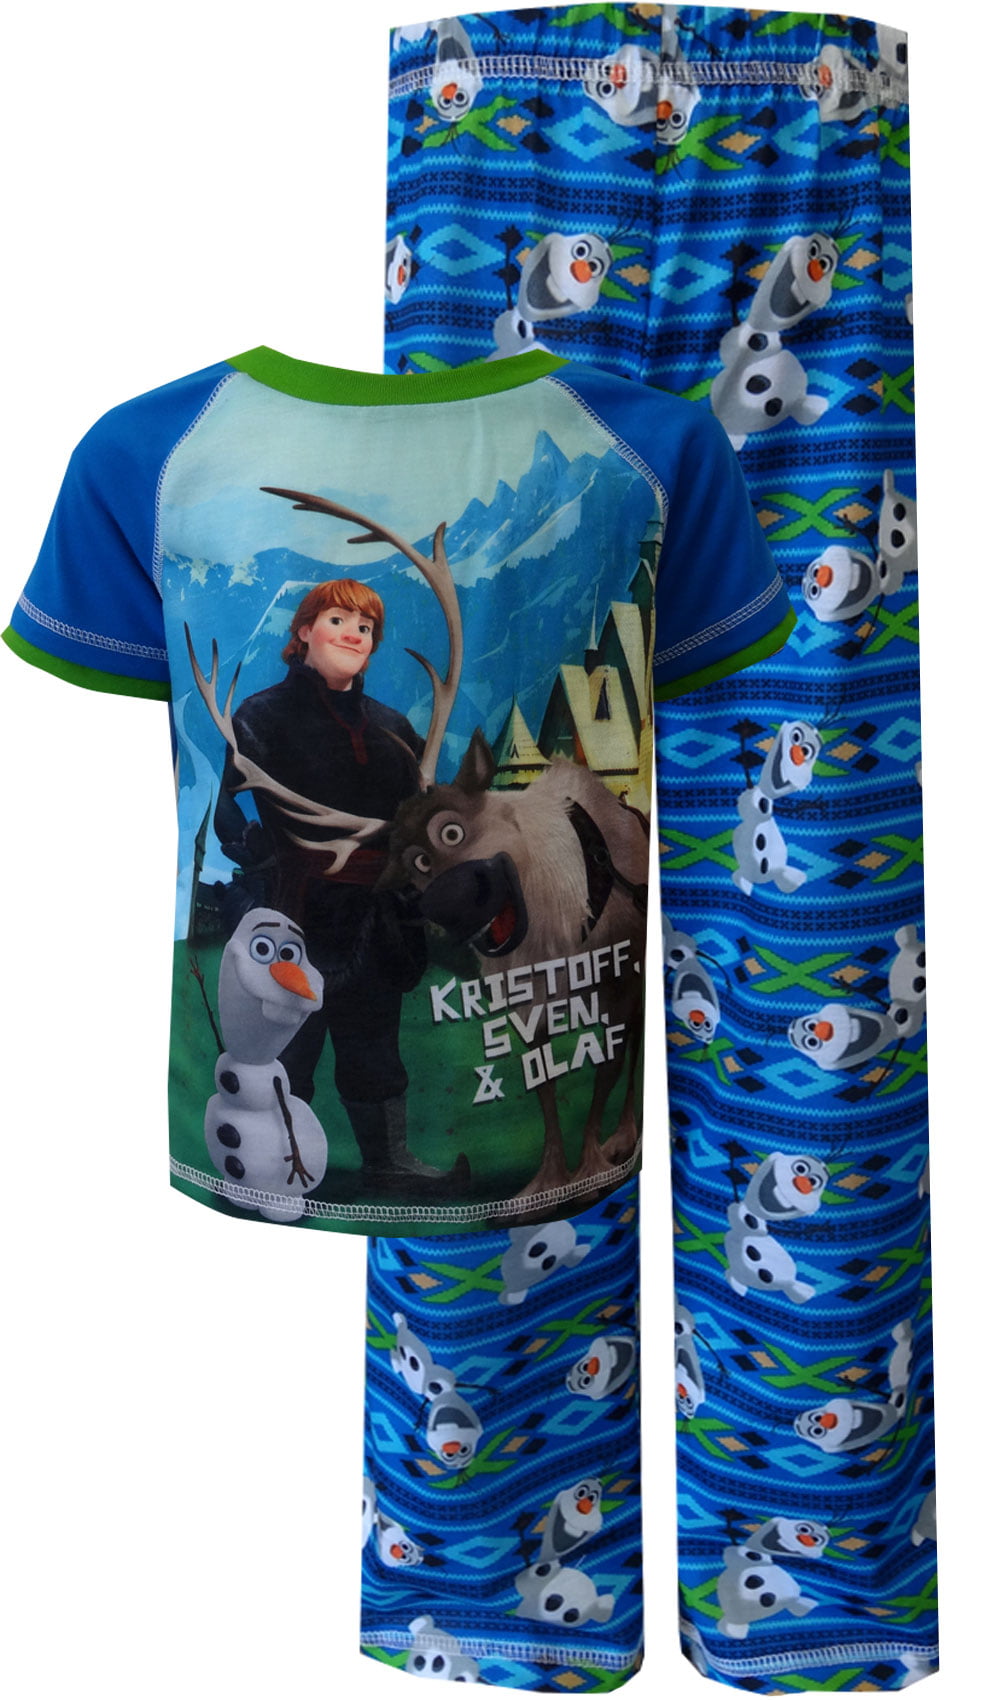 Kids Boys Disney Frozen Sven Kristoff Olaf Pyjamas PJs Nightwear Sleepwear 